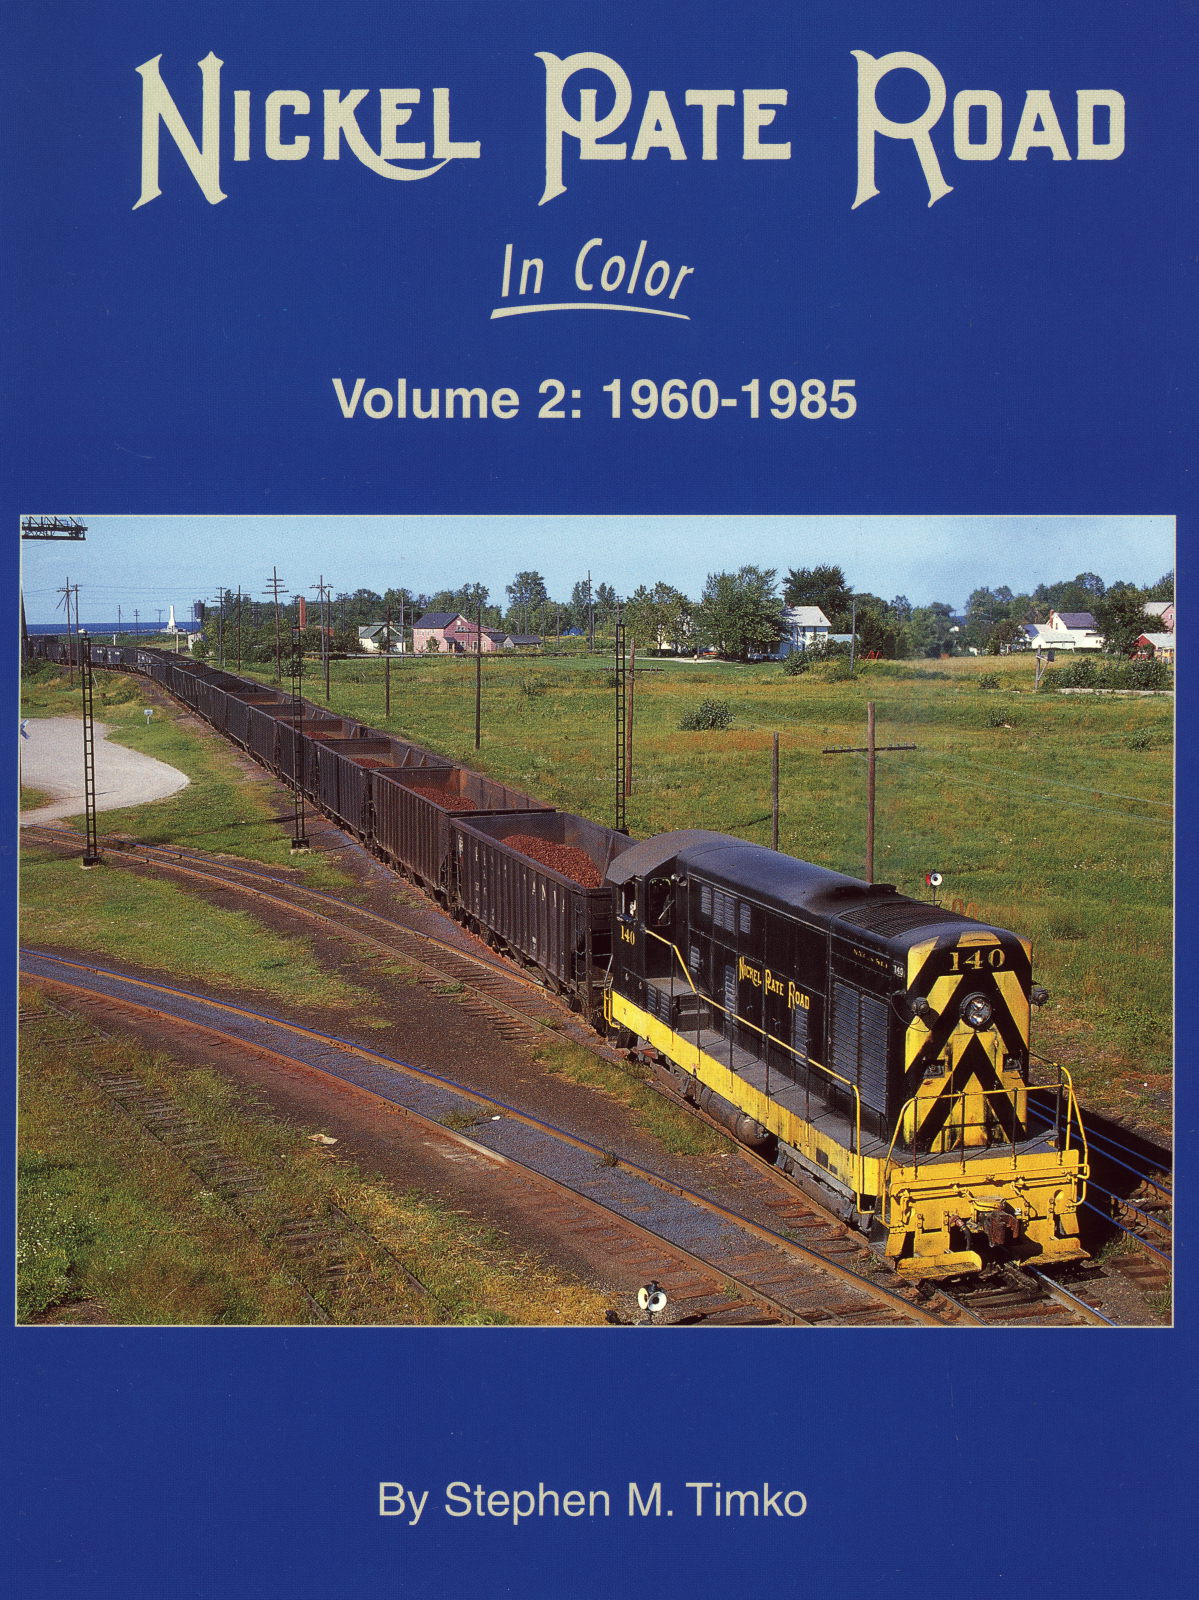 Nickel Plate Road in Color Volume 2: 1960-1985